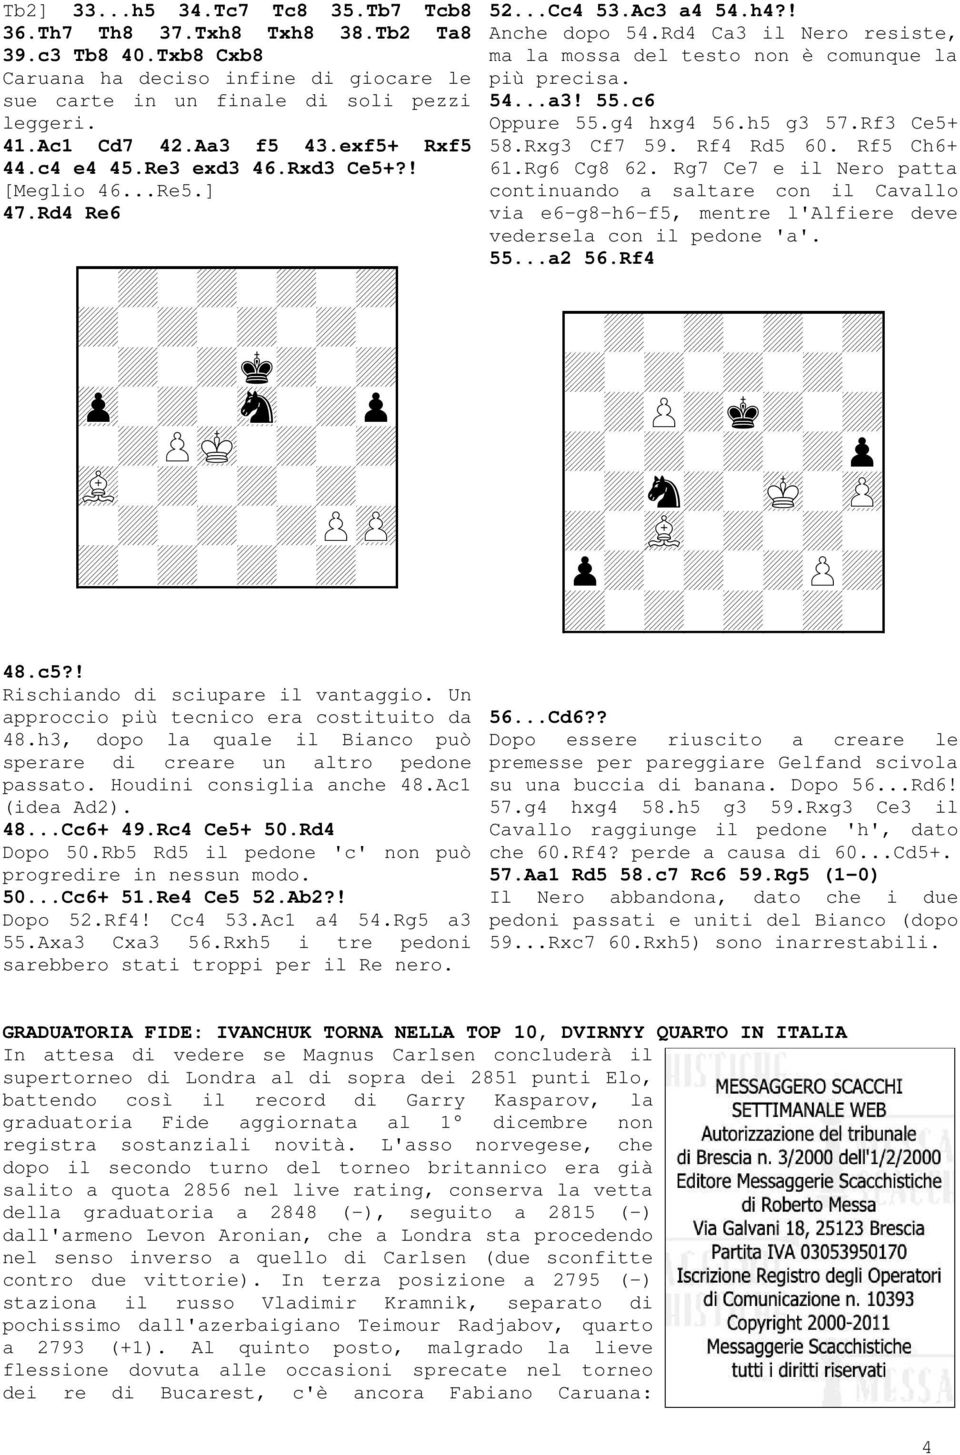 h3, dopo la quale il Bianco può sperare di creare un altro pedone passato. Houdini consiglia anche 48.Ac1 (idea Ad2). 48...Cc6+ 49.Rc4 Ce5+ 50.Rd4 Dopo 50.